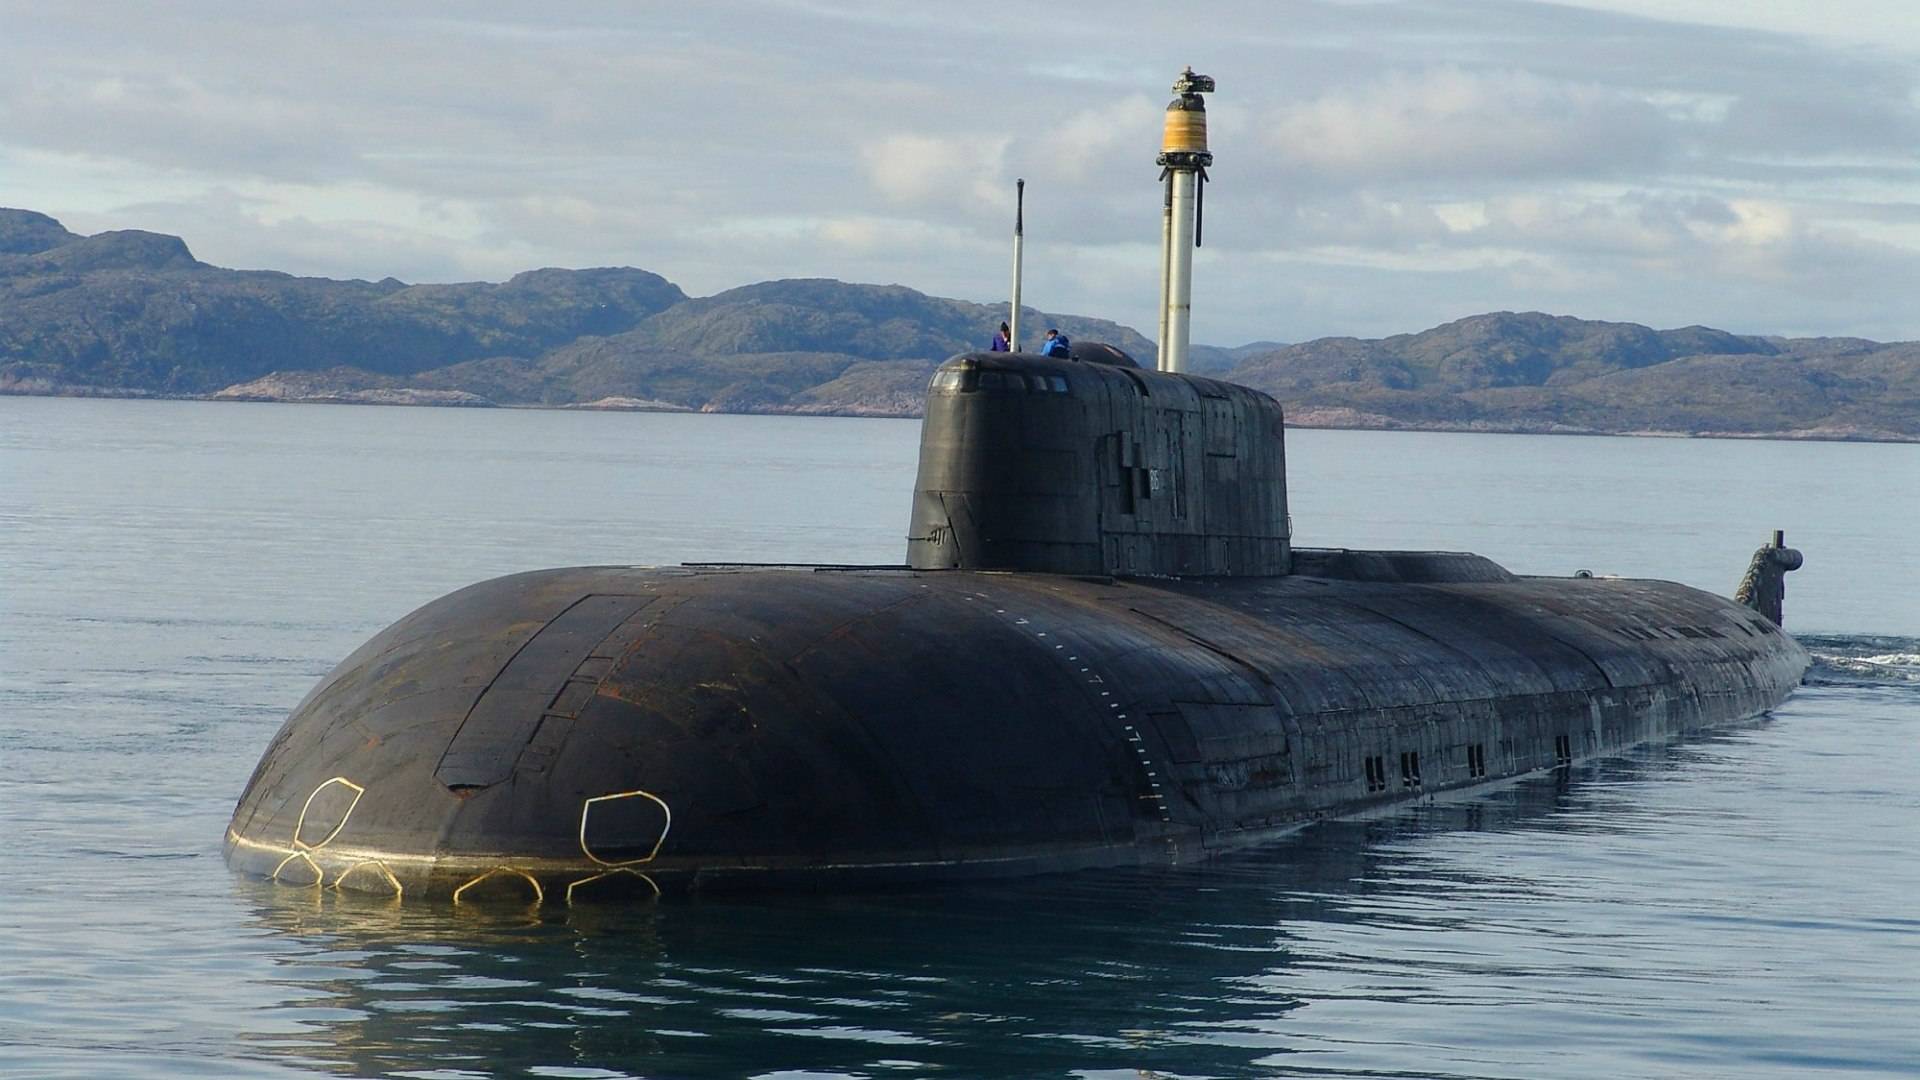 Атомные подводные лодки проекта 949а, апл омск, томск, челябинск, иркутск, орел, смоленск, воронеж и тверь